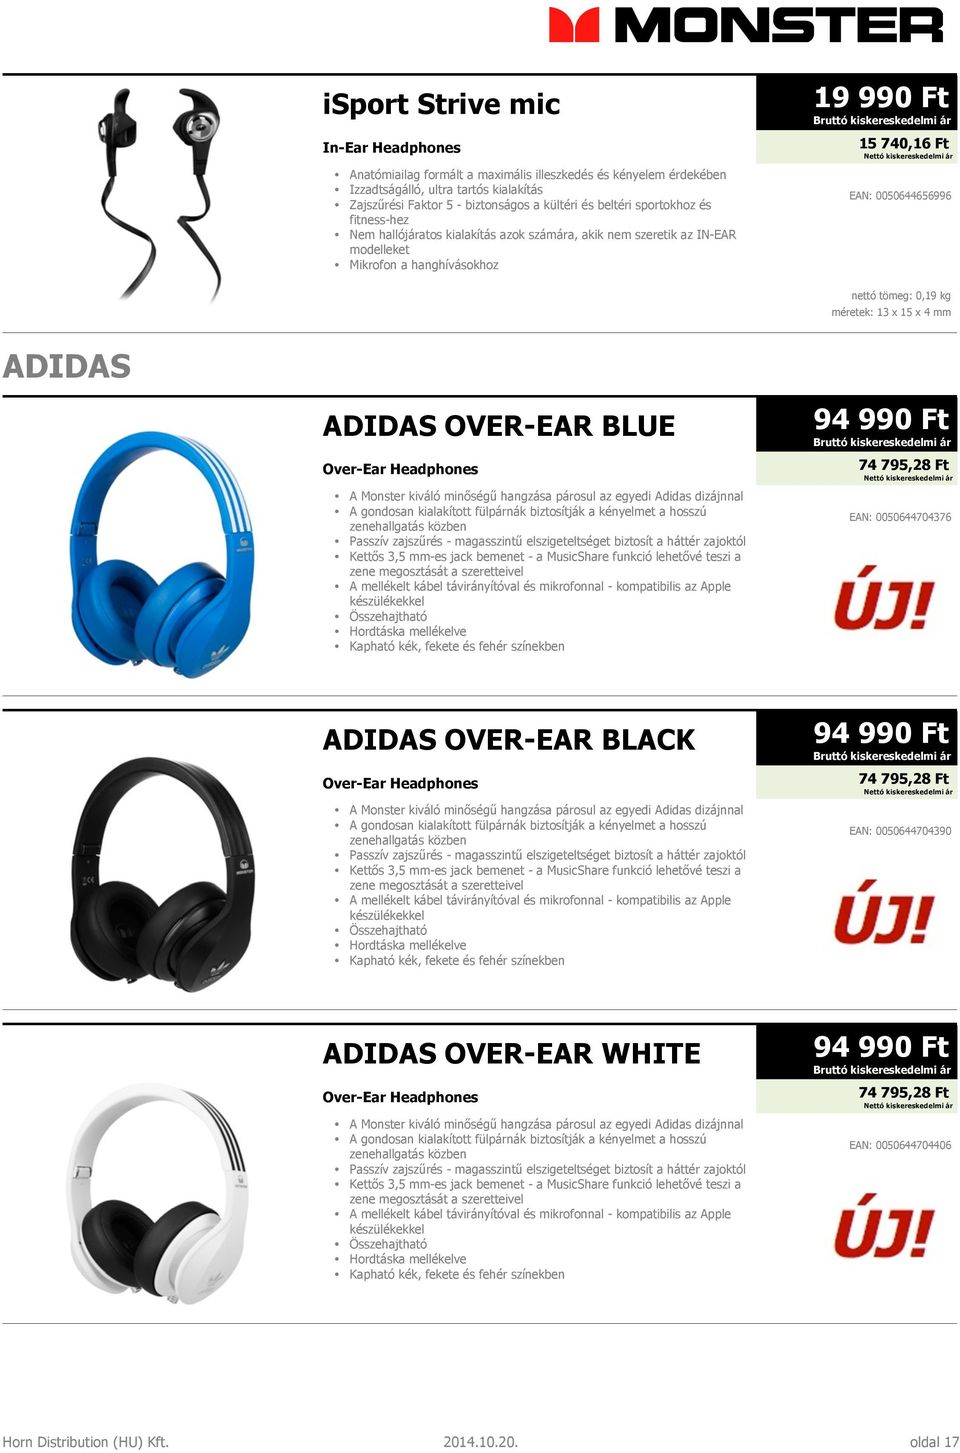 méretek: 13 x 15 x 4 mm ADIDAS ADIDAS OVER-EAR BLUE Over-Ear Headphones A Monster kiváló minőségű hangzása párosul az egyedi Adidas dizájnnal A gondosan kialakított fülpárnák biztosítják a kényelmet